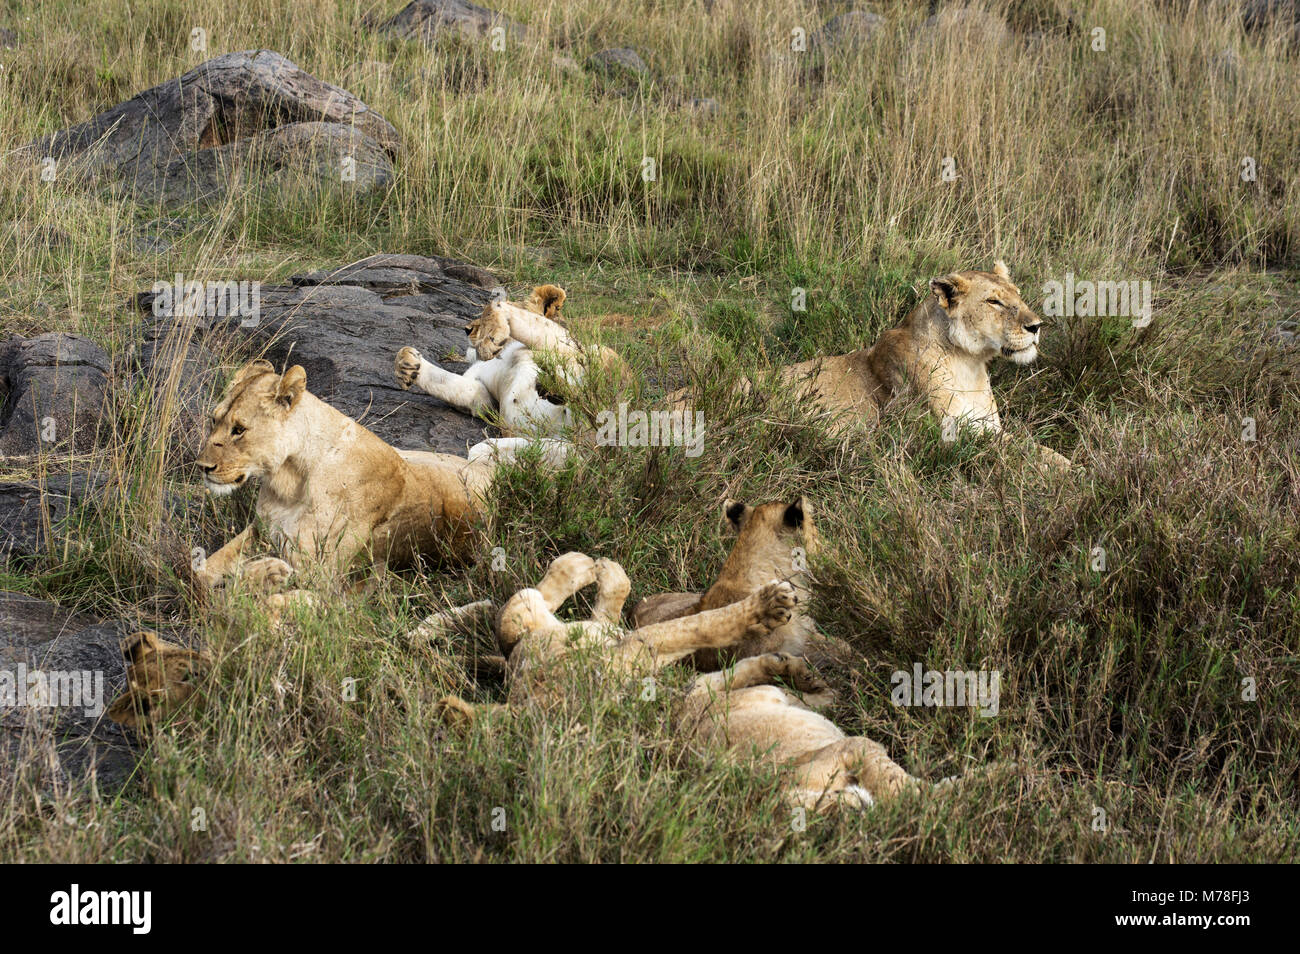 Una manada de leones con varios cachorros y jóvenes leones y leonas en la  hierba en la sabana en Arusha, en el norte de Tanzania fotografiado en  safari Fotografía de stock -